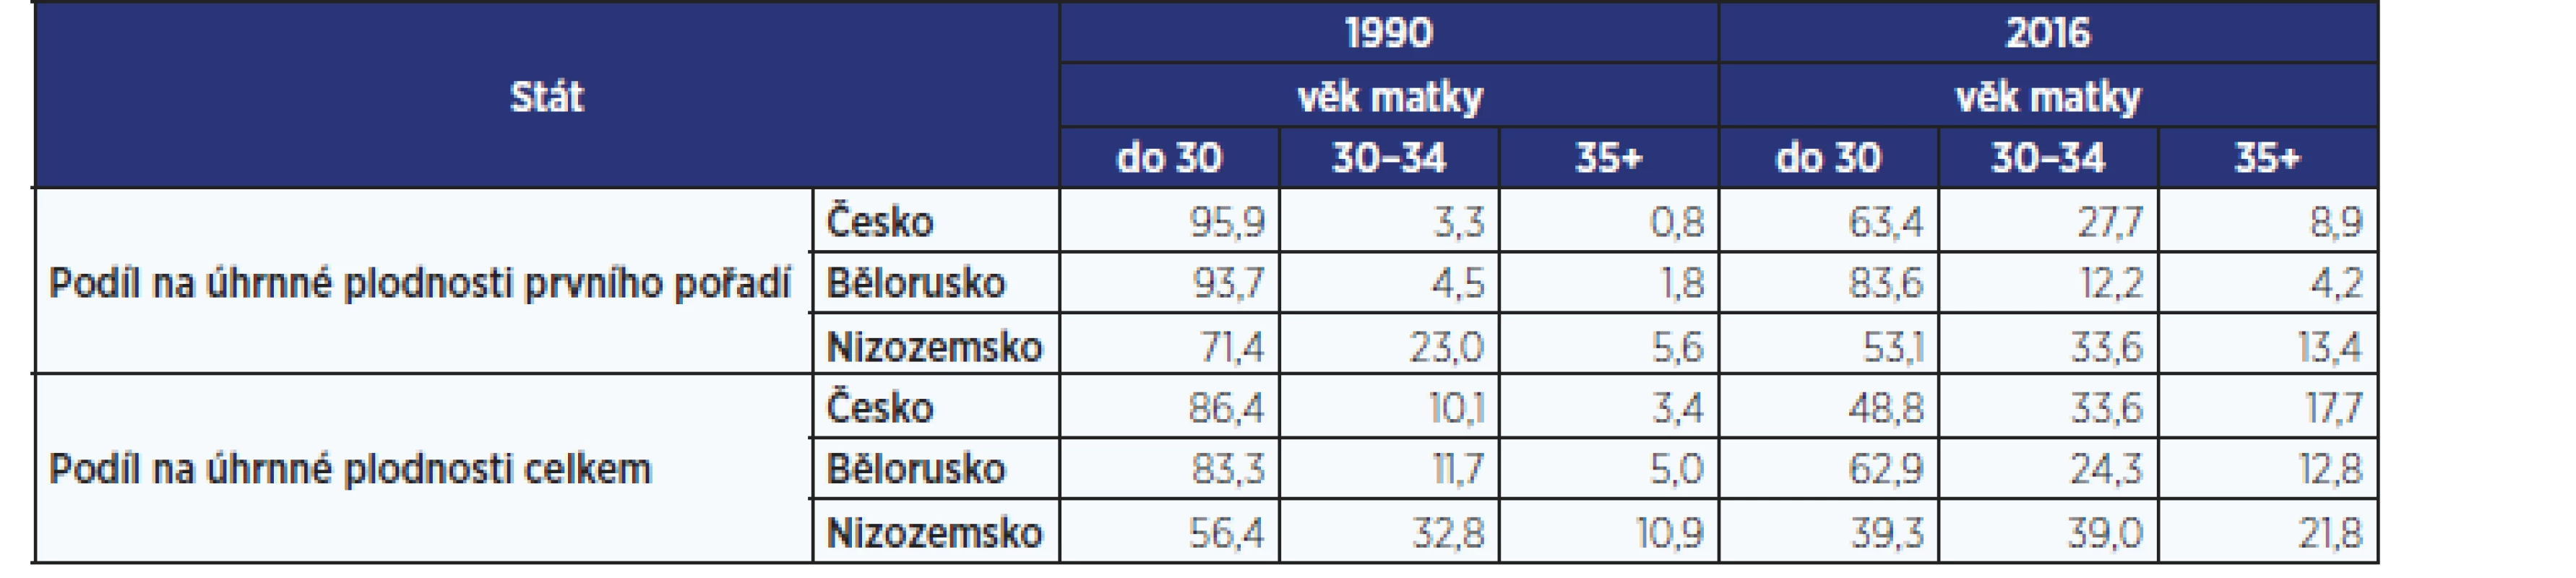 Podíl věkových skupin na úhrnné plodnosti prvního pořadí a na úhrnné plodnosti celkem, Česko, Bělorusko, Nizozemsko 1990 a 2016
(v %) (zdroj: 20; vlastní zpracování)